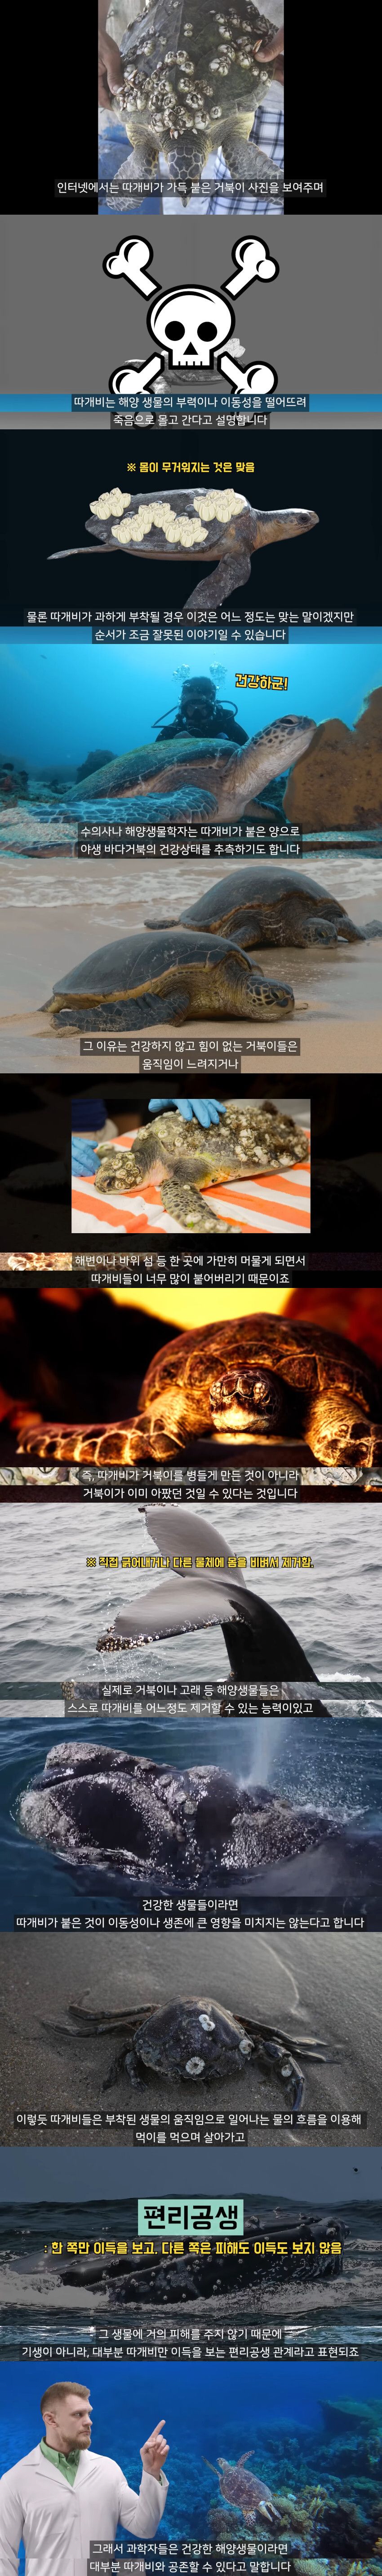 [유머] 따개비는 정말 거북이에게 피해를 줄까? -  와이드섬